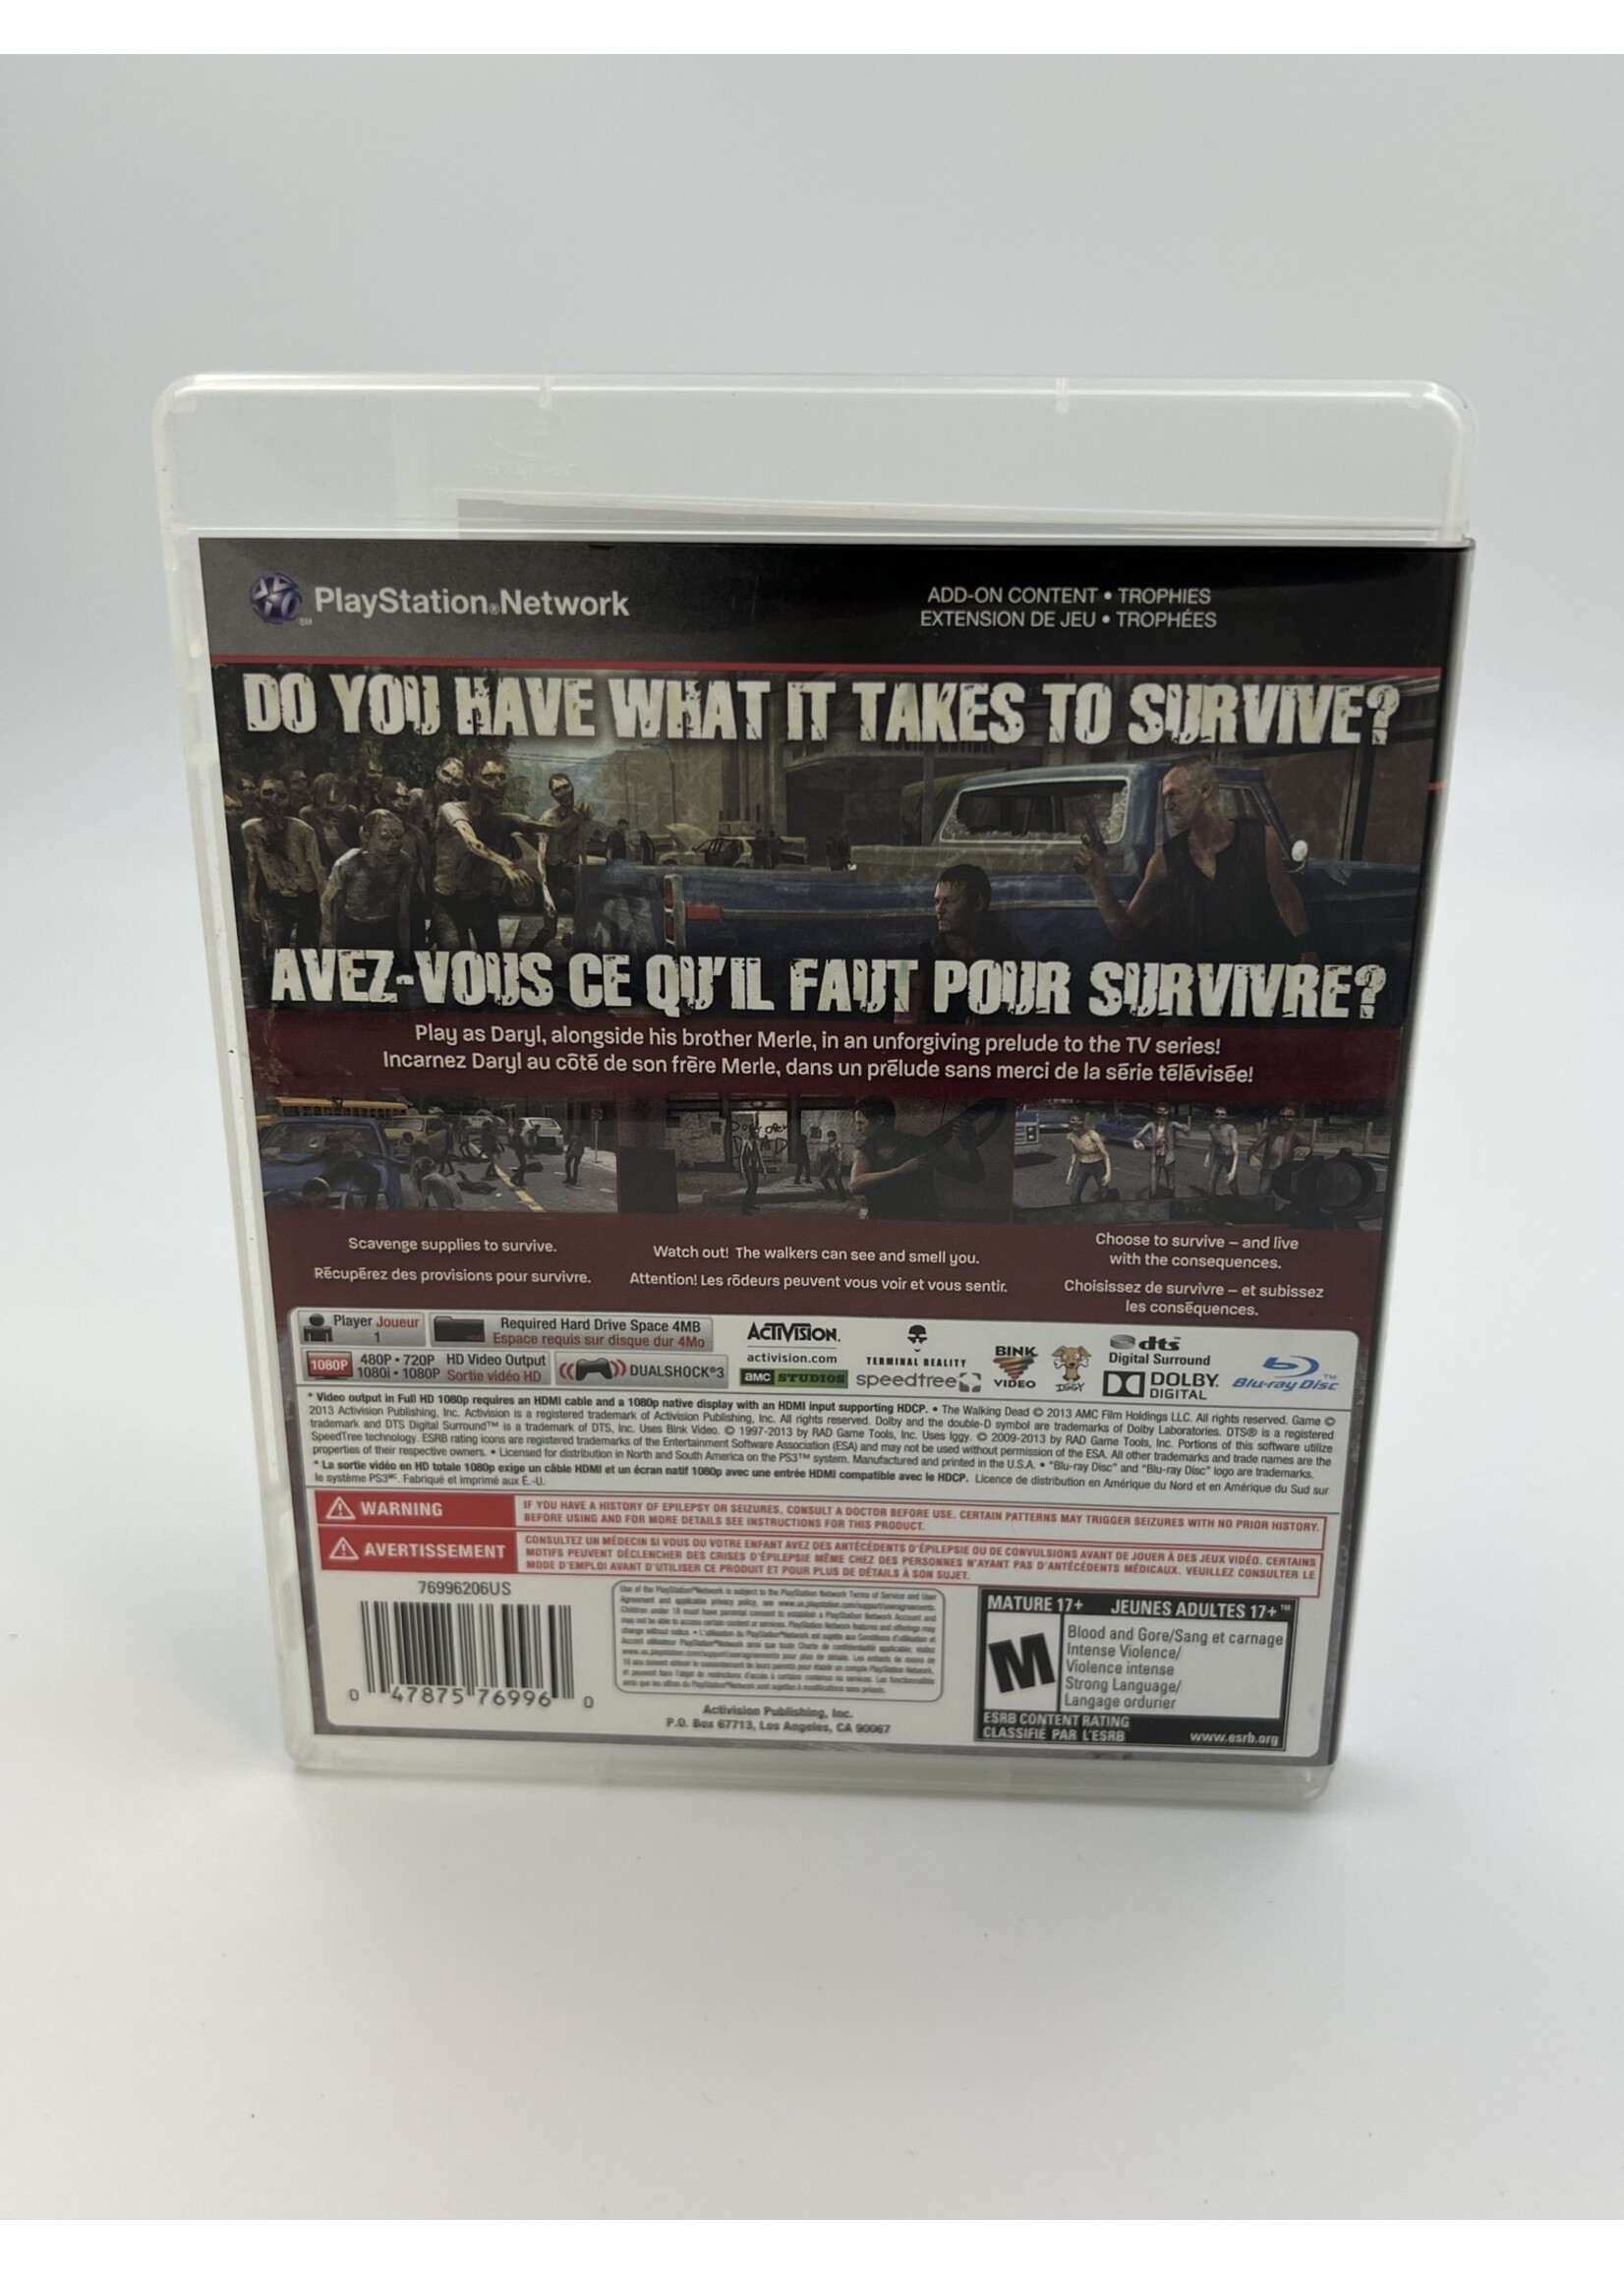 Sony The Walking Dead Survival Instinct PS3